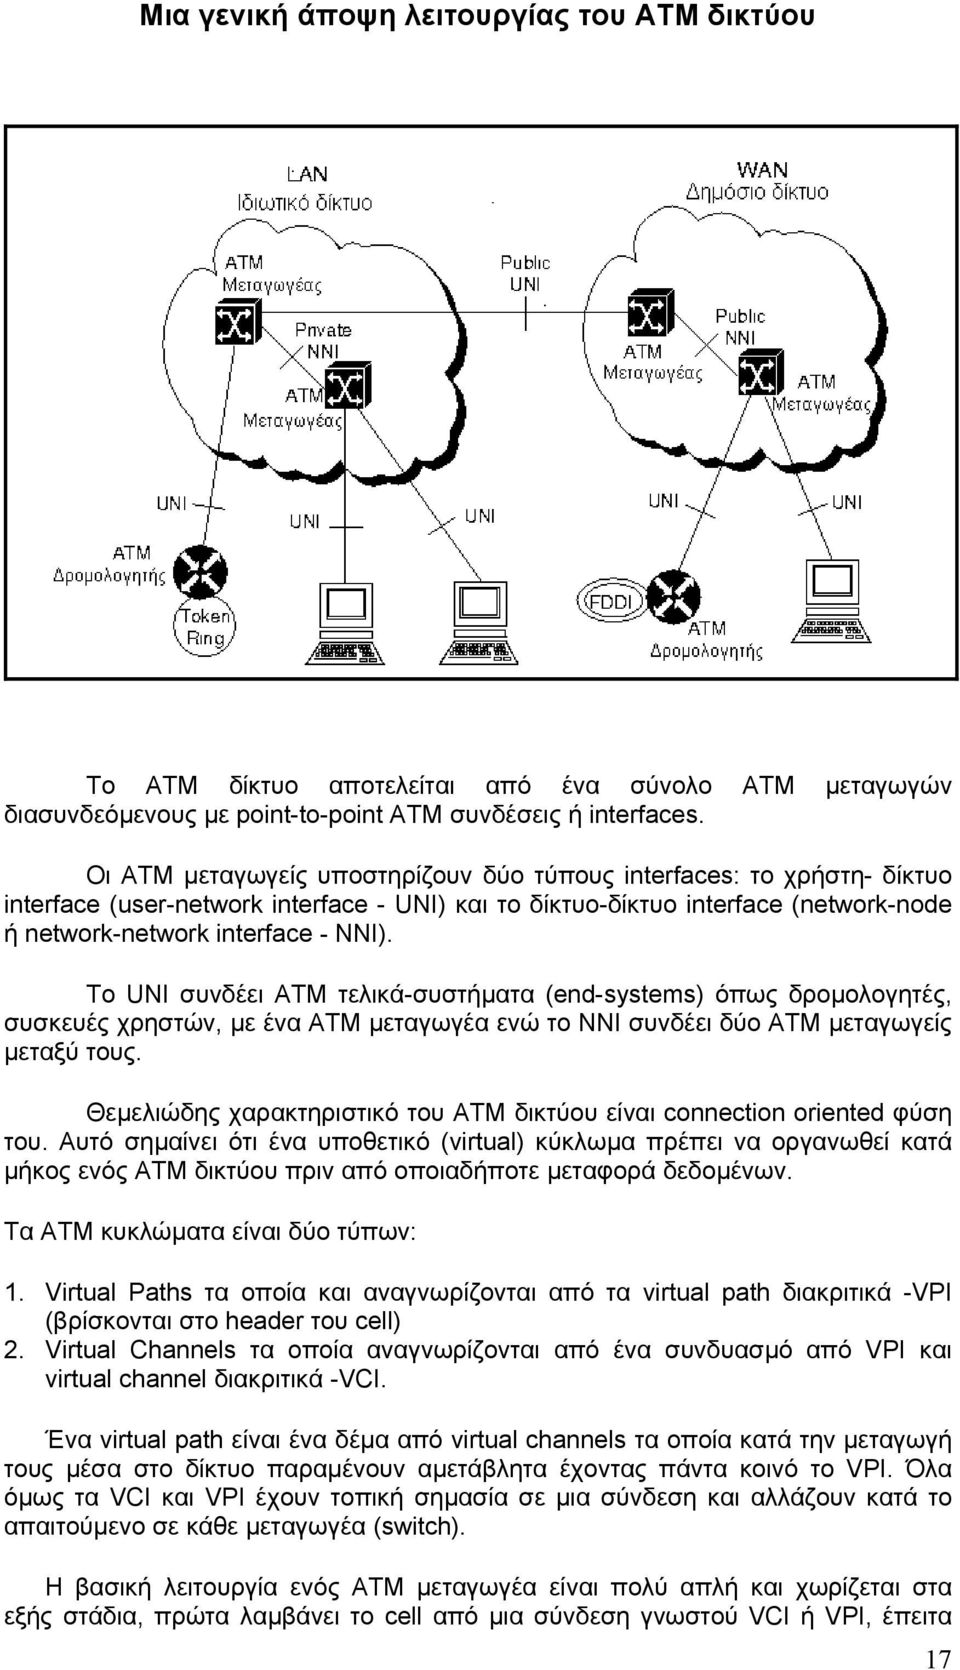 Το UNI συνδέει ΑΤΜ τελικά-συστήµατα (end-systems) όπως δροµολογητές, συσκευές χρηστών, µε ένα ΑΤΜ µεταγωγέα ενώ το ΝΝΙ συνδέει δύο ΑΤΜ µεταγωγείς µεταξύ τους.